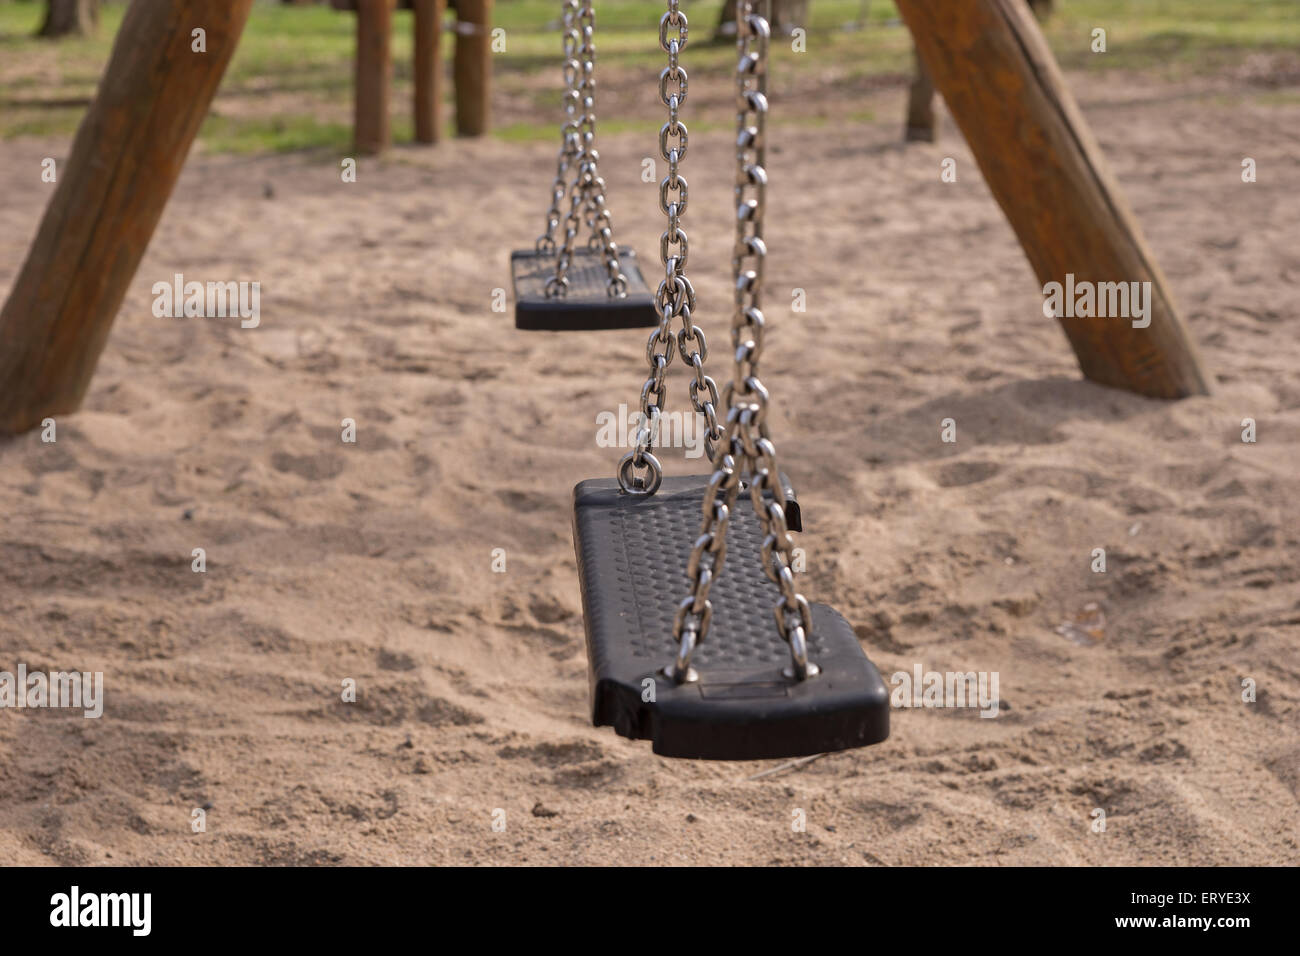 Swing vacía en una zona de recreo para niños Foto de stock